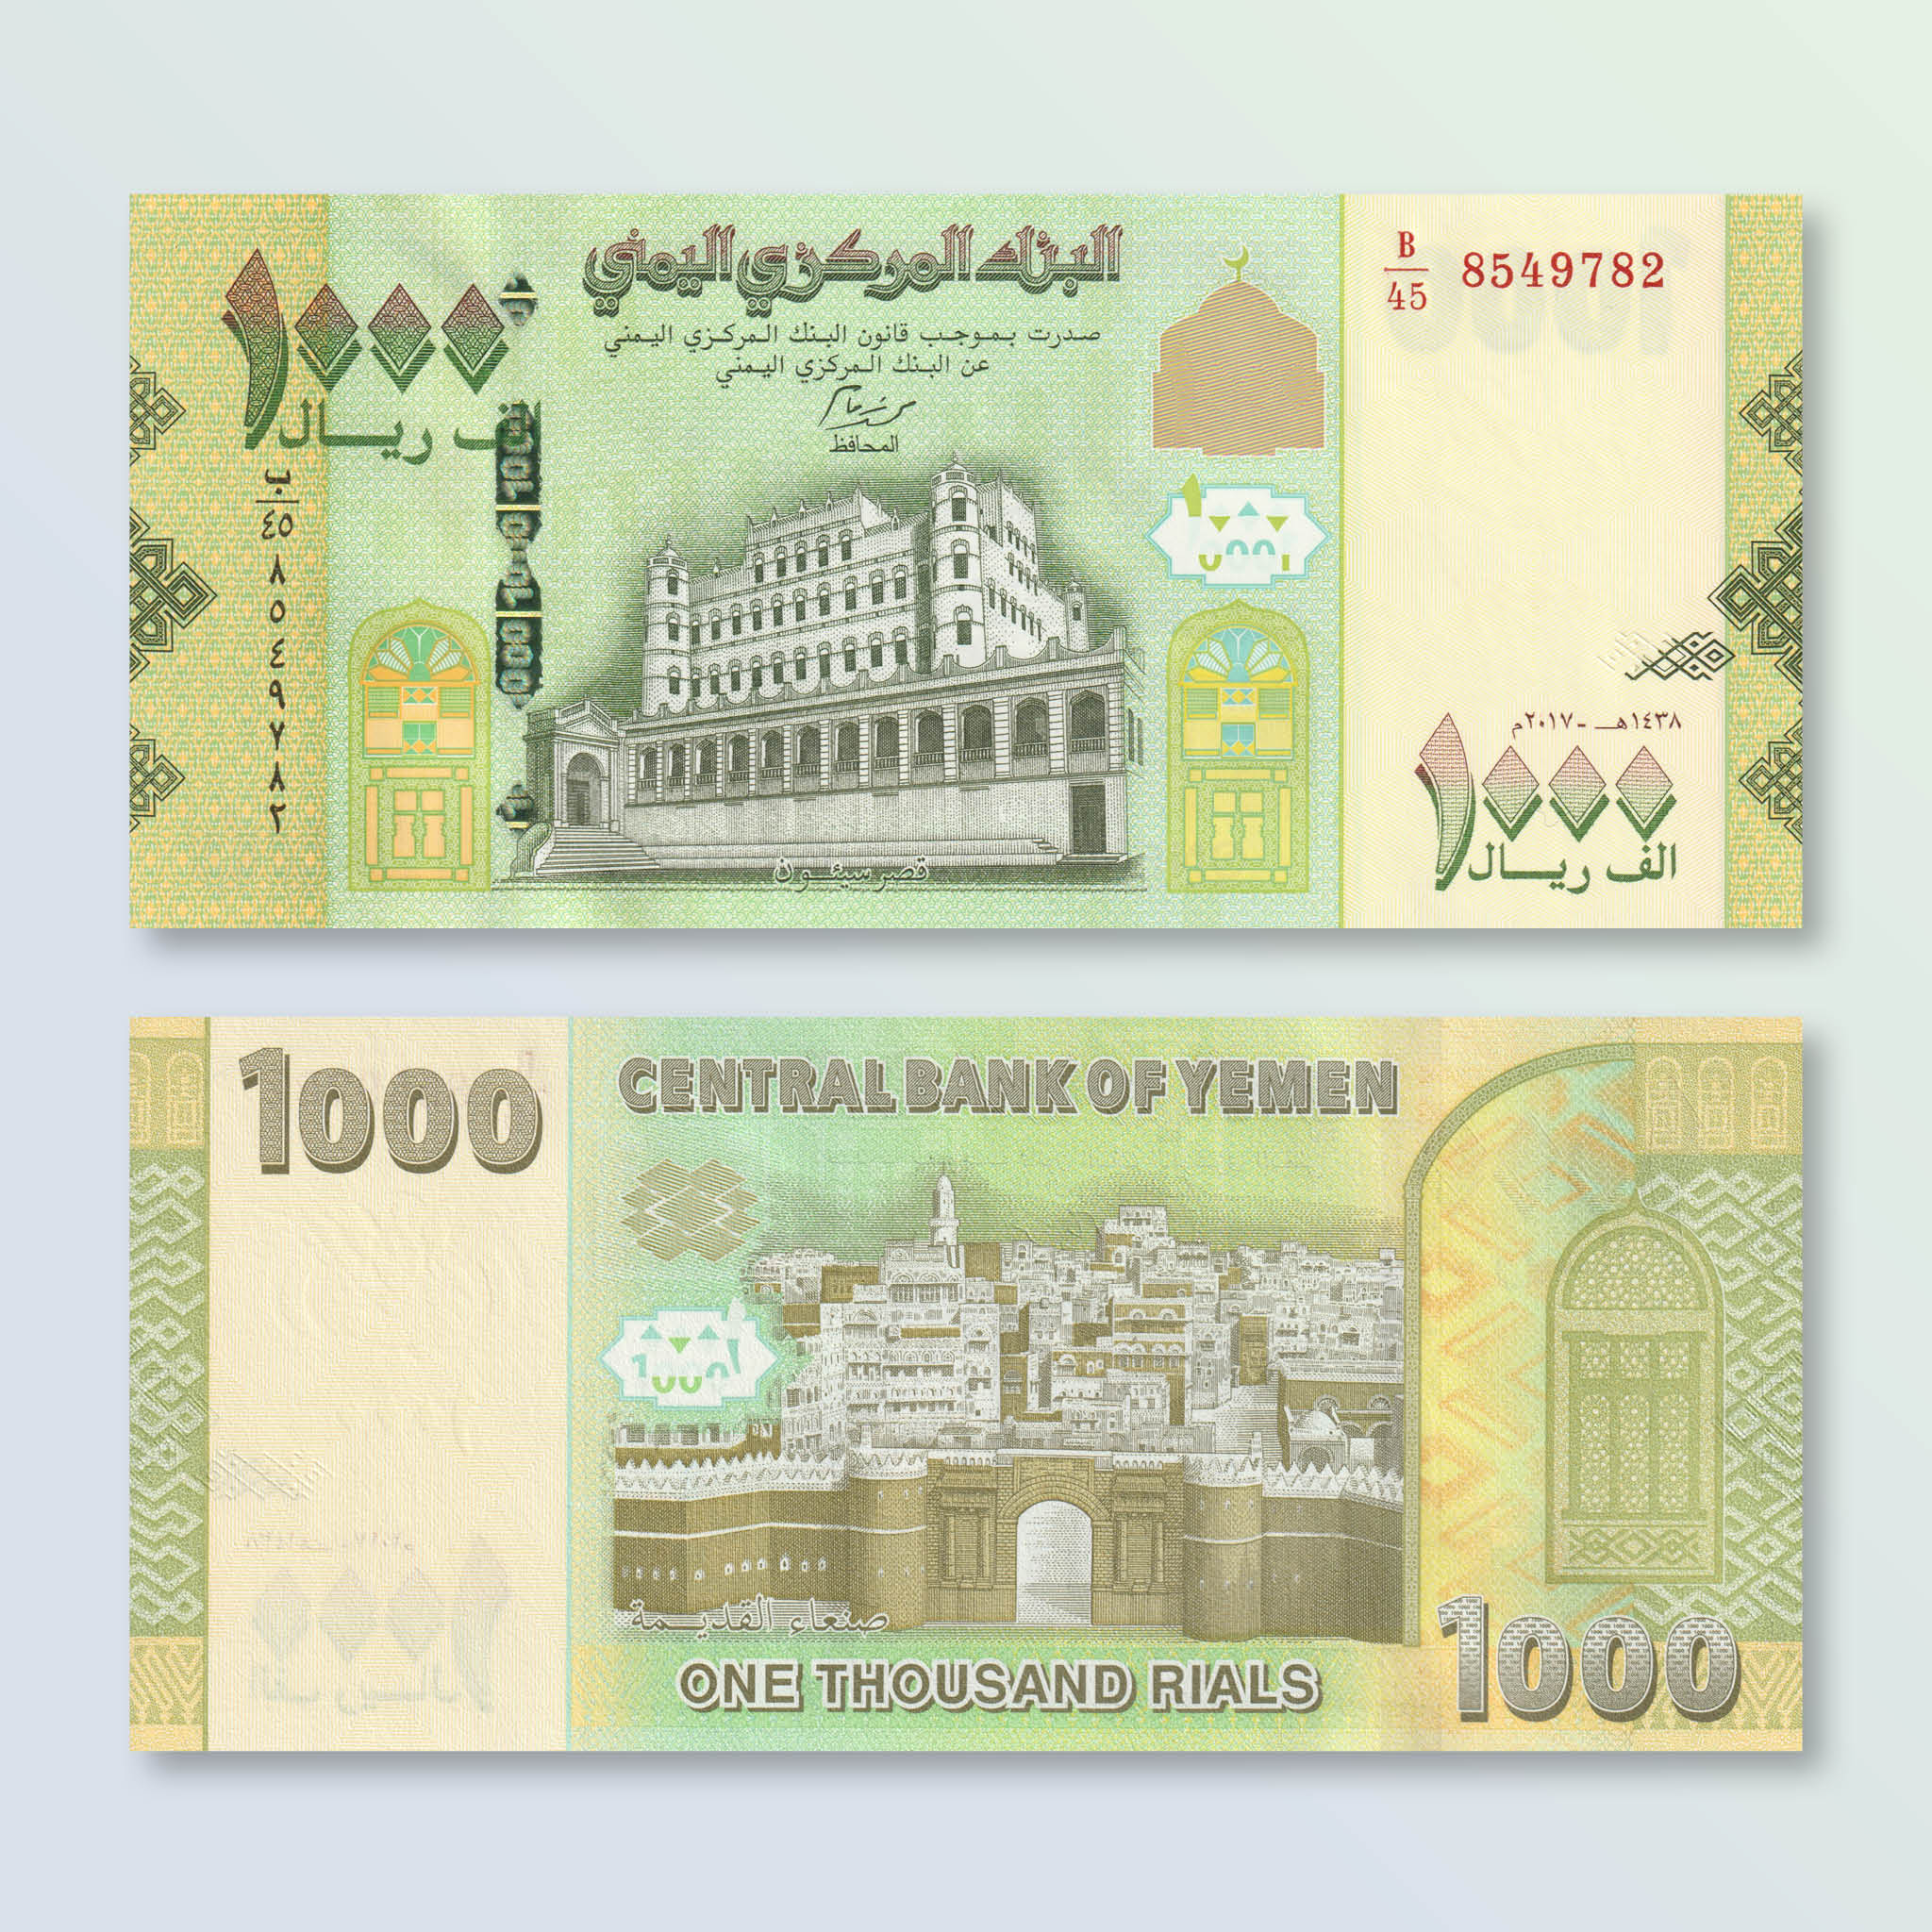 Yemen 1000 Rials, 2017, B130b, P40, UNC - Robert's World Money - World Banknotes